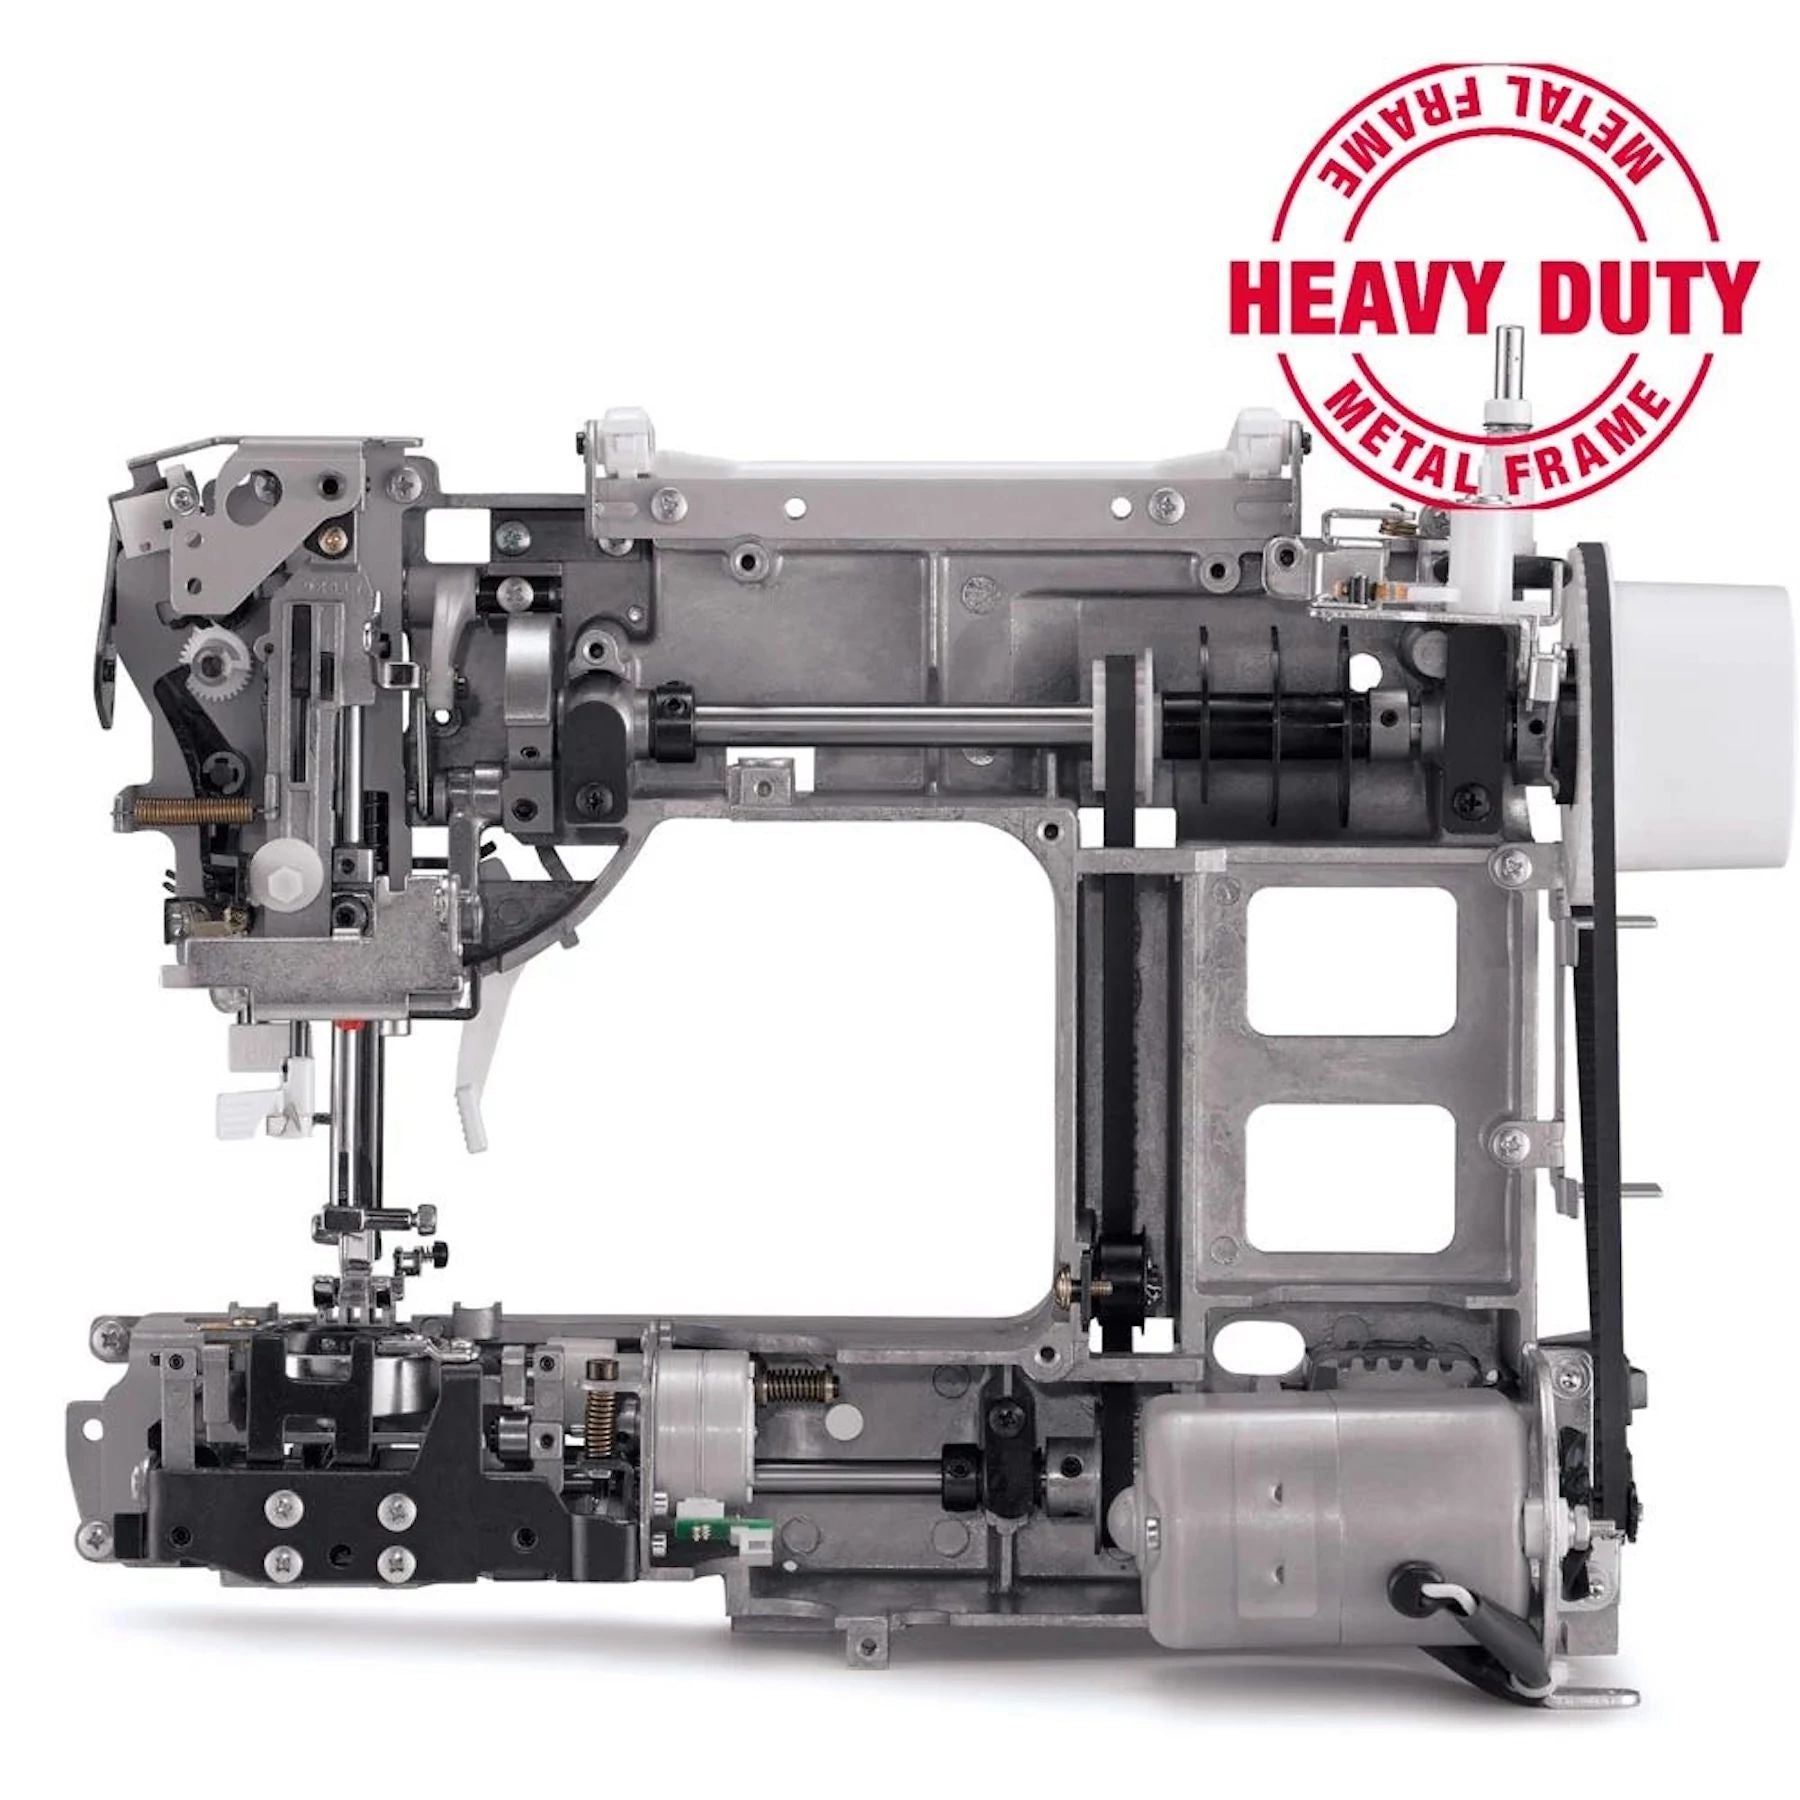 Heavy duty metal frame that is inside Singer Heavy Duty machines.